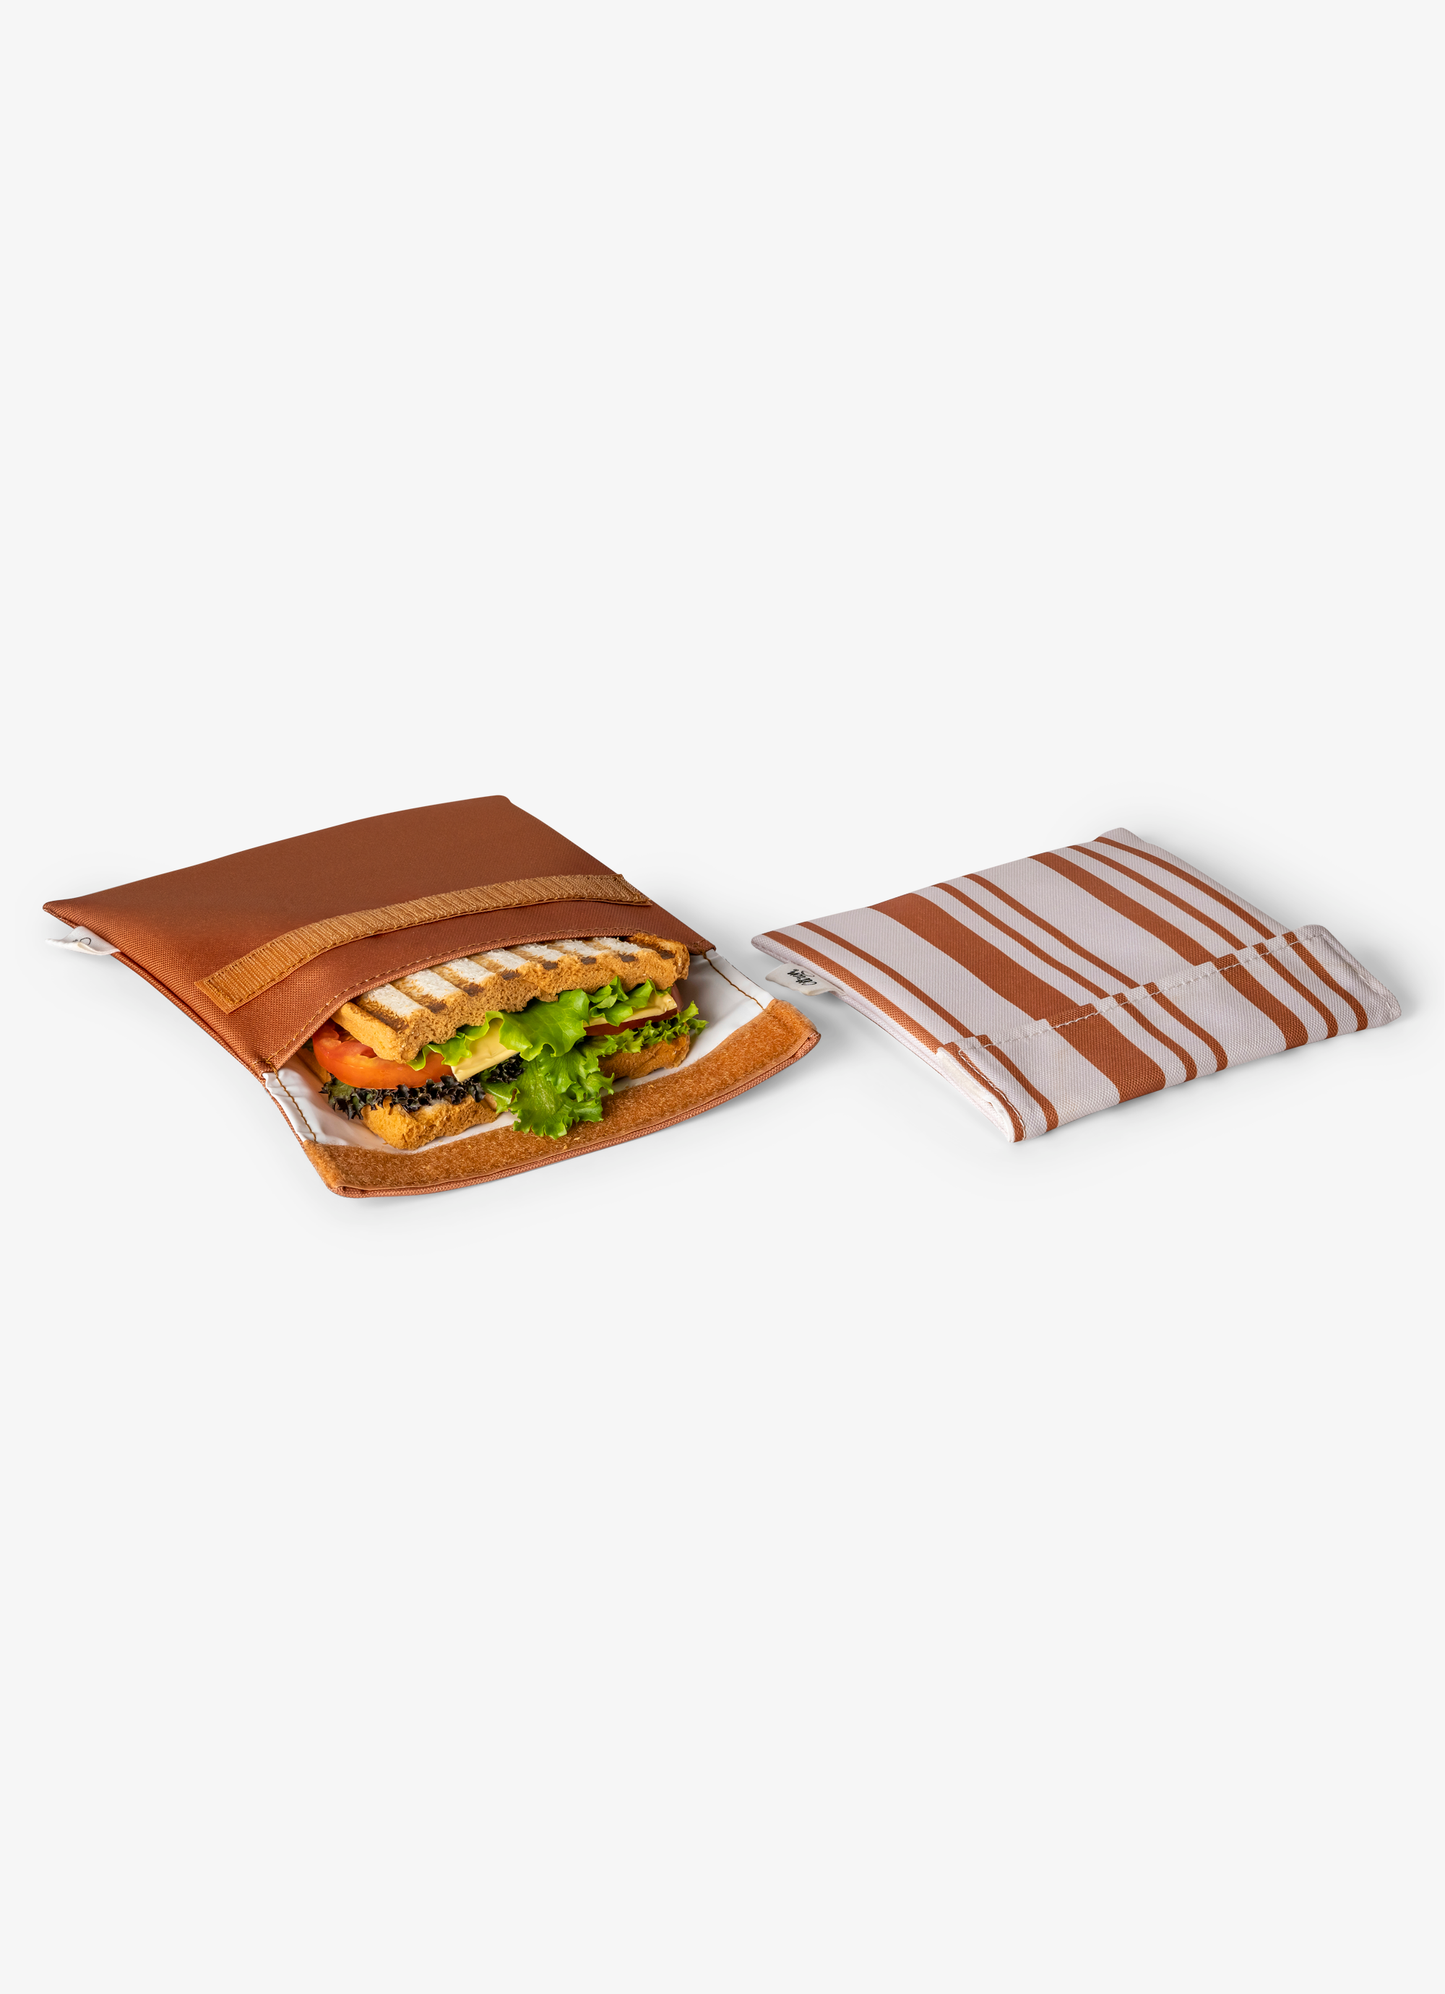 كيس ساندوش قابل لأعادة الأستخدام - طقم من قطعتين - كراميل